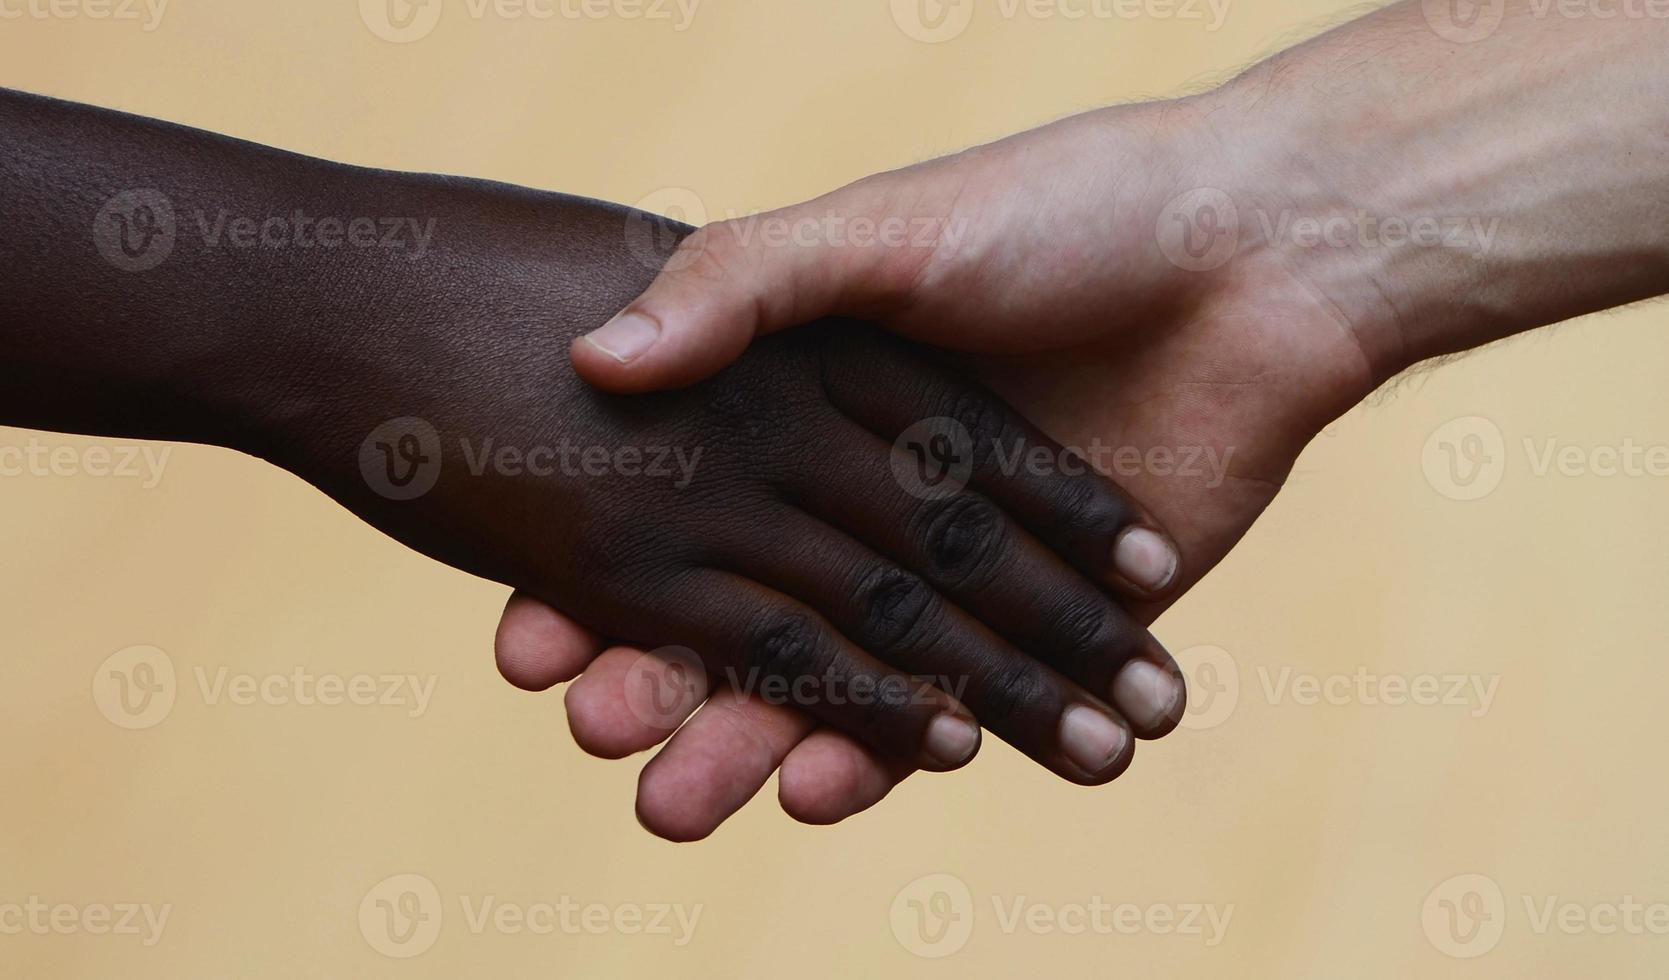 trabajo de ayuda benéfica: estrechar la mano - símbolo de igualdad foto